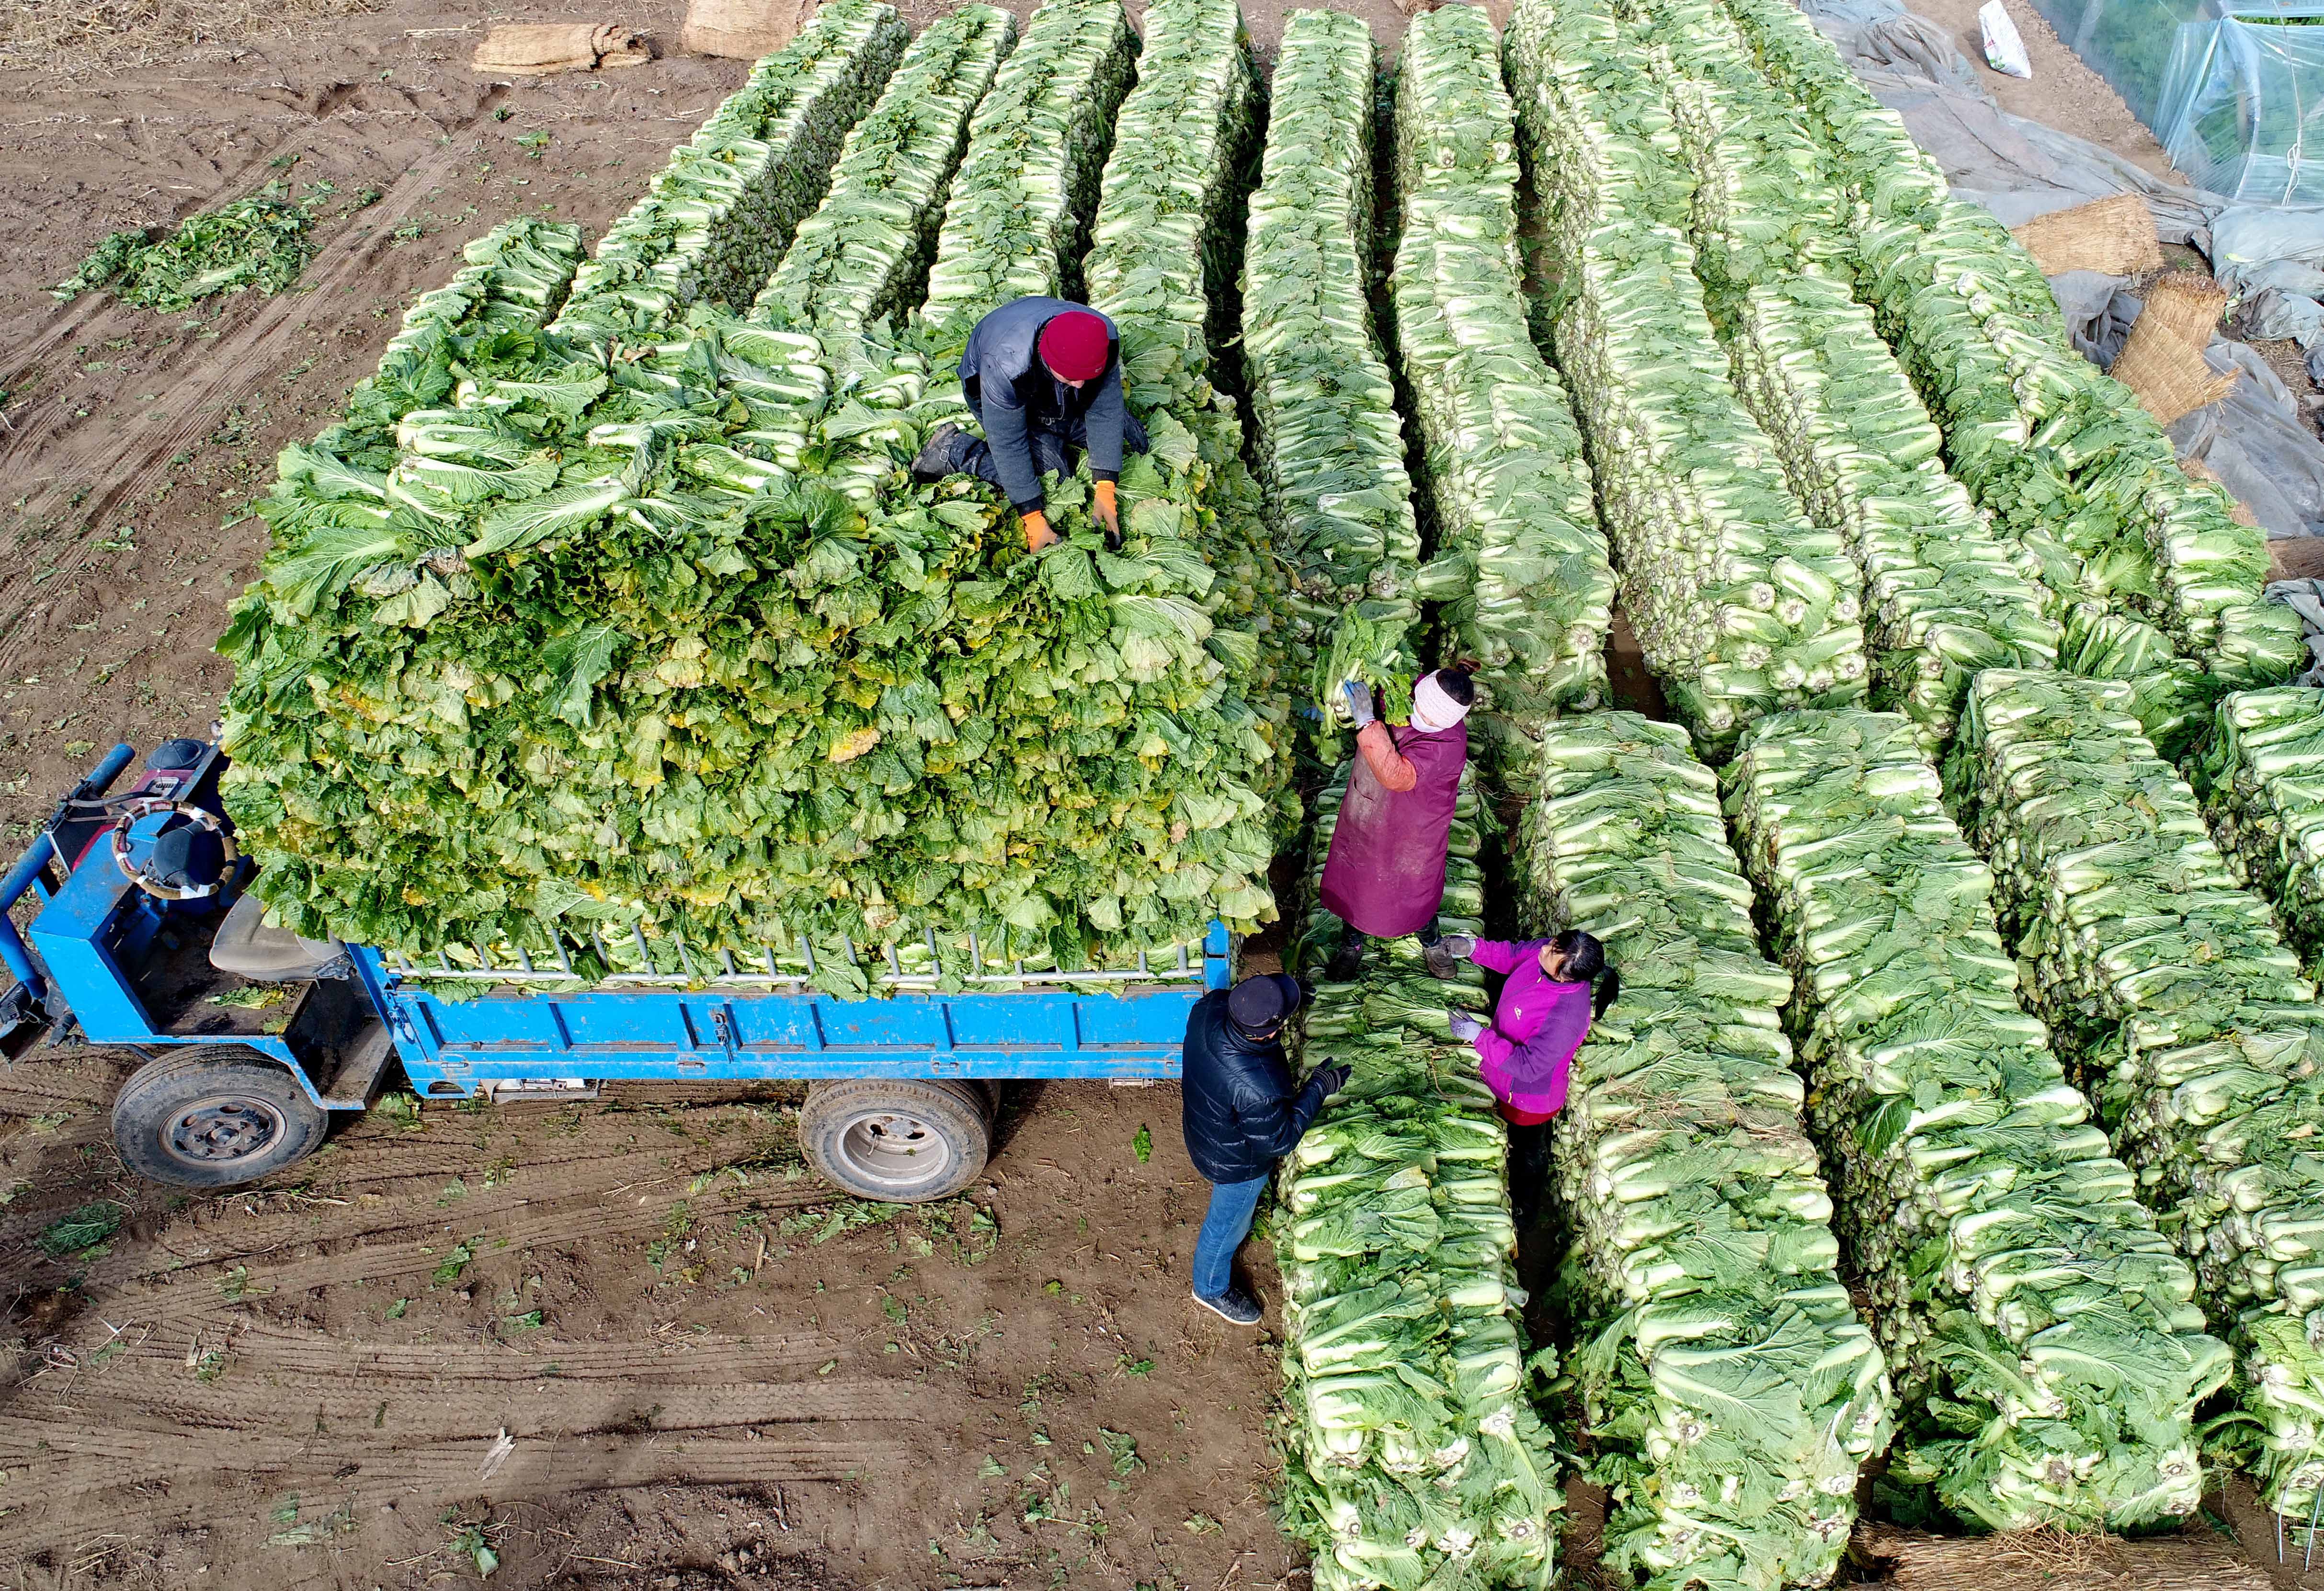 乐亭县大相各庄乡的菜农将收获的大白菜装车外运(11月27日无人机拍摄)